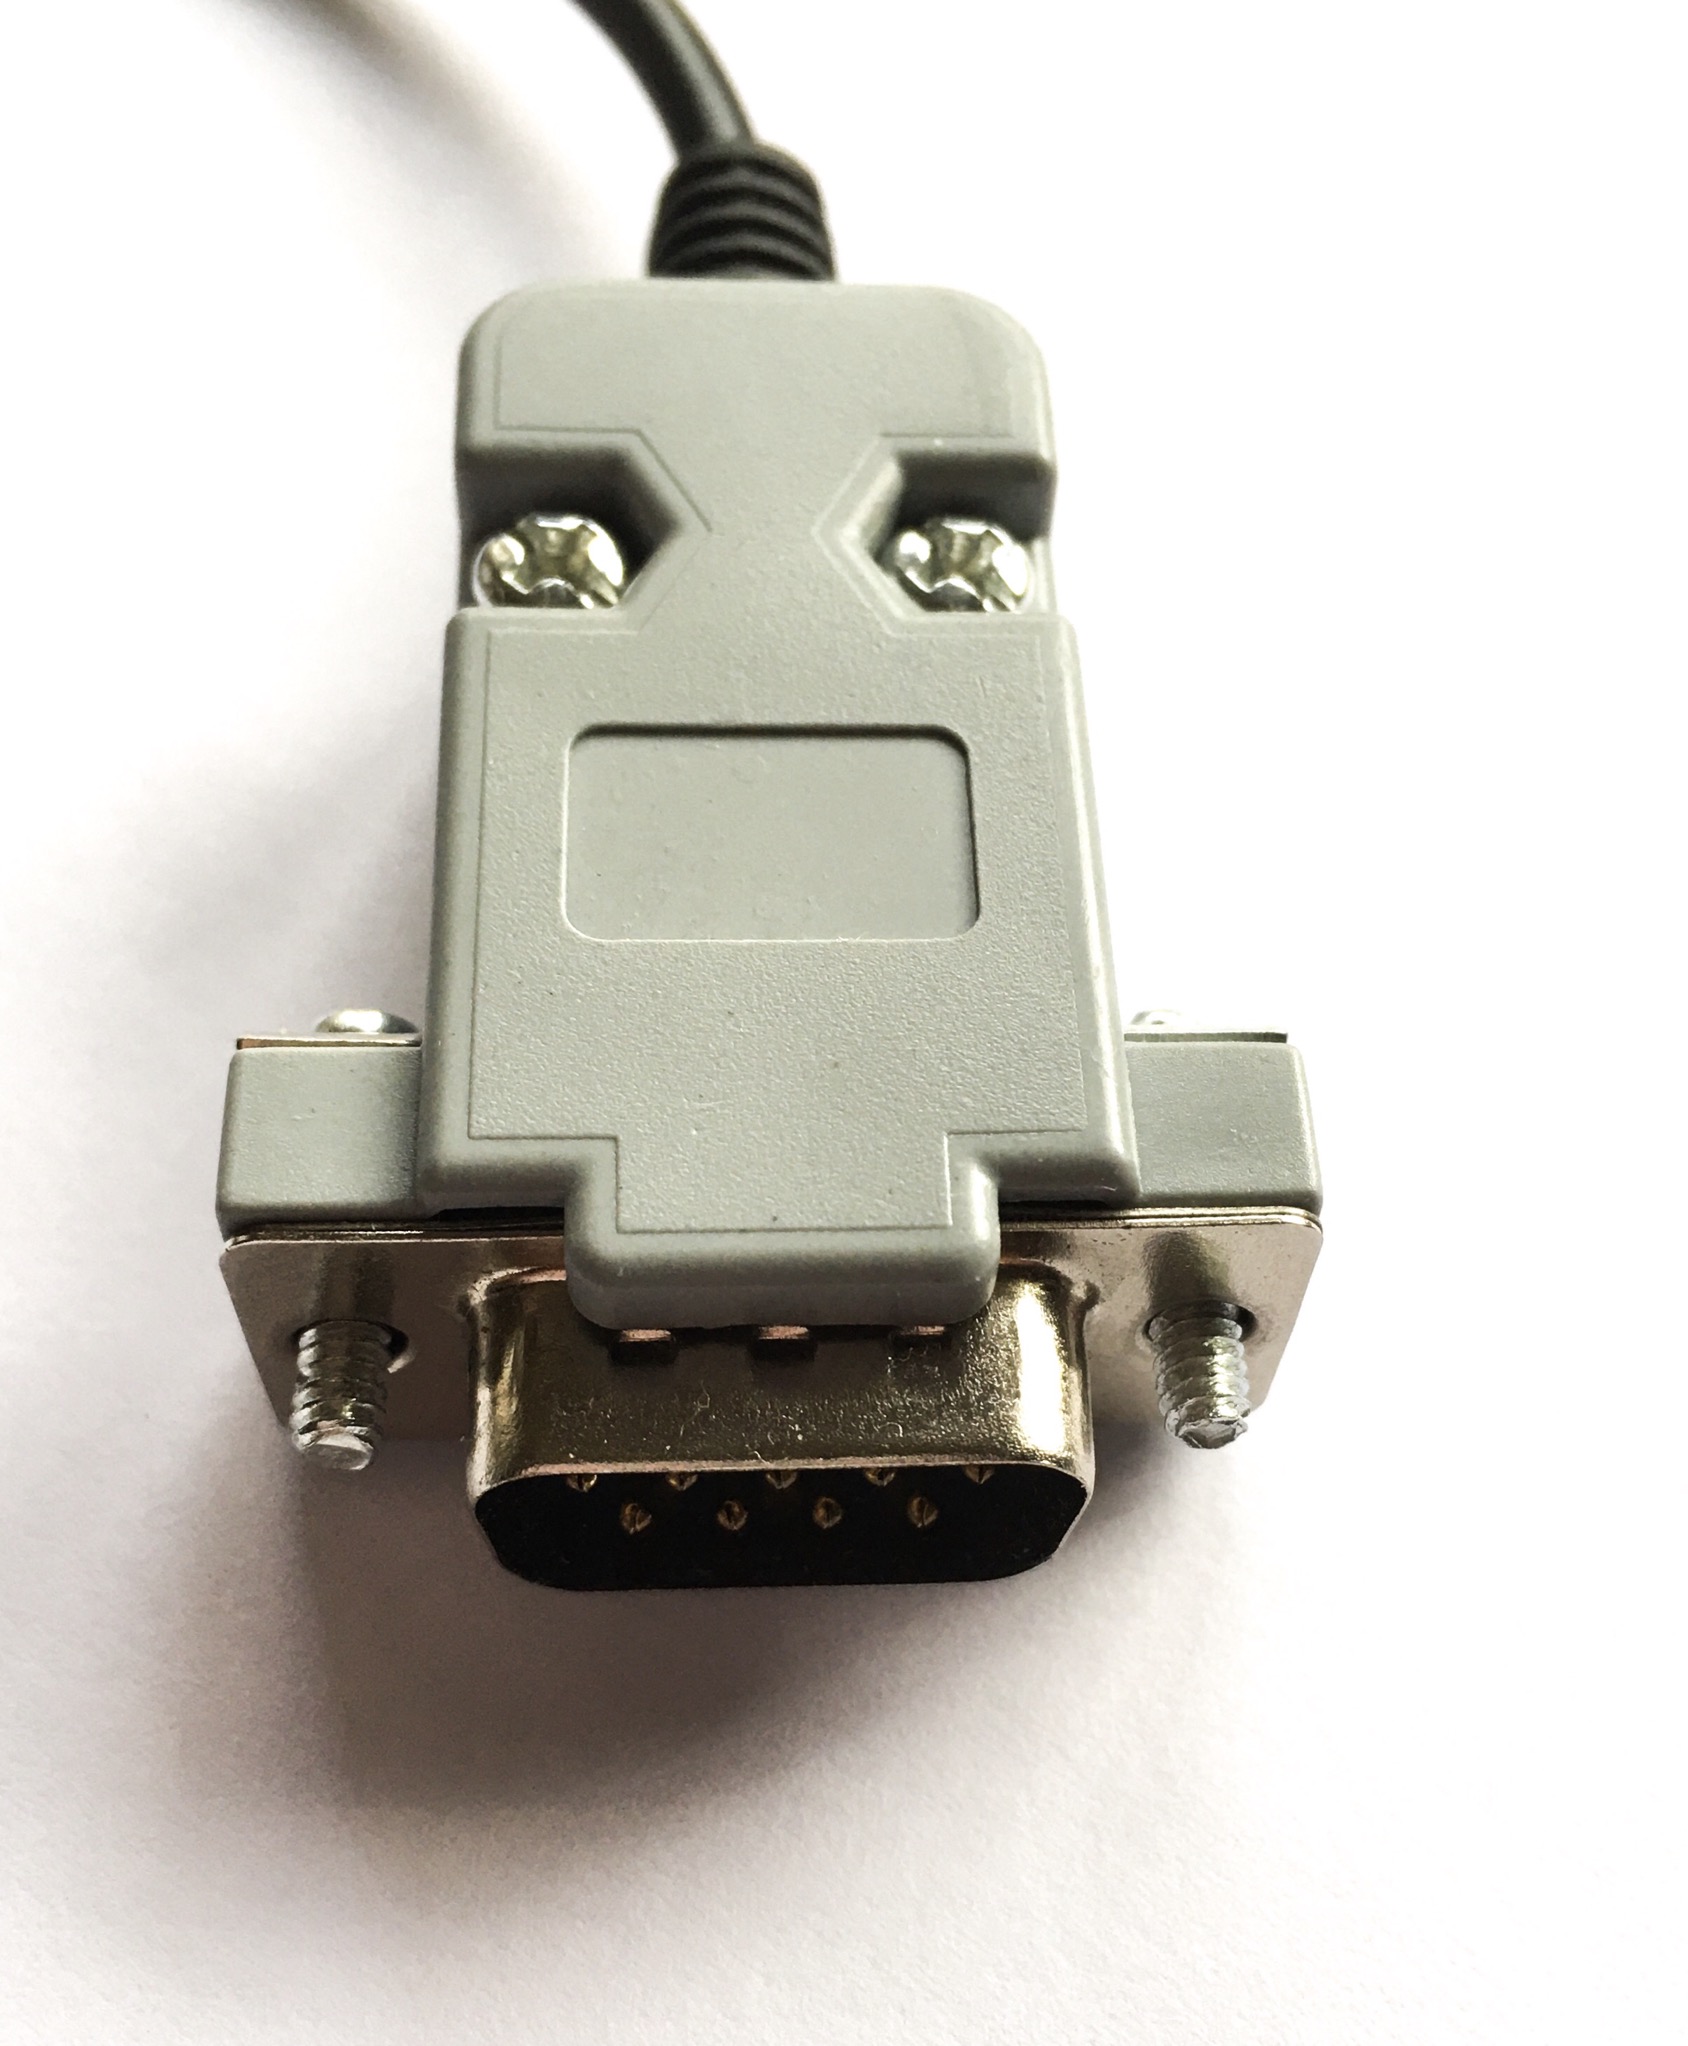 Kmtech MKIV Amiga/Atari Mouse USB Adattatore Convertitore Con Mode Switch ponticelli 